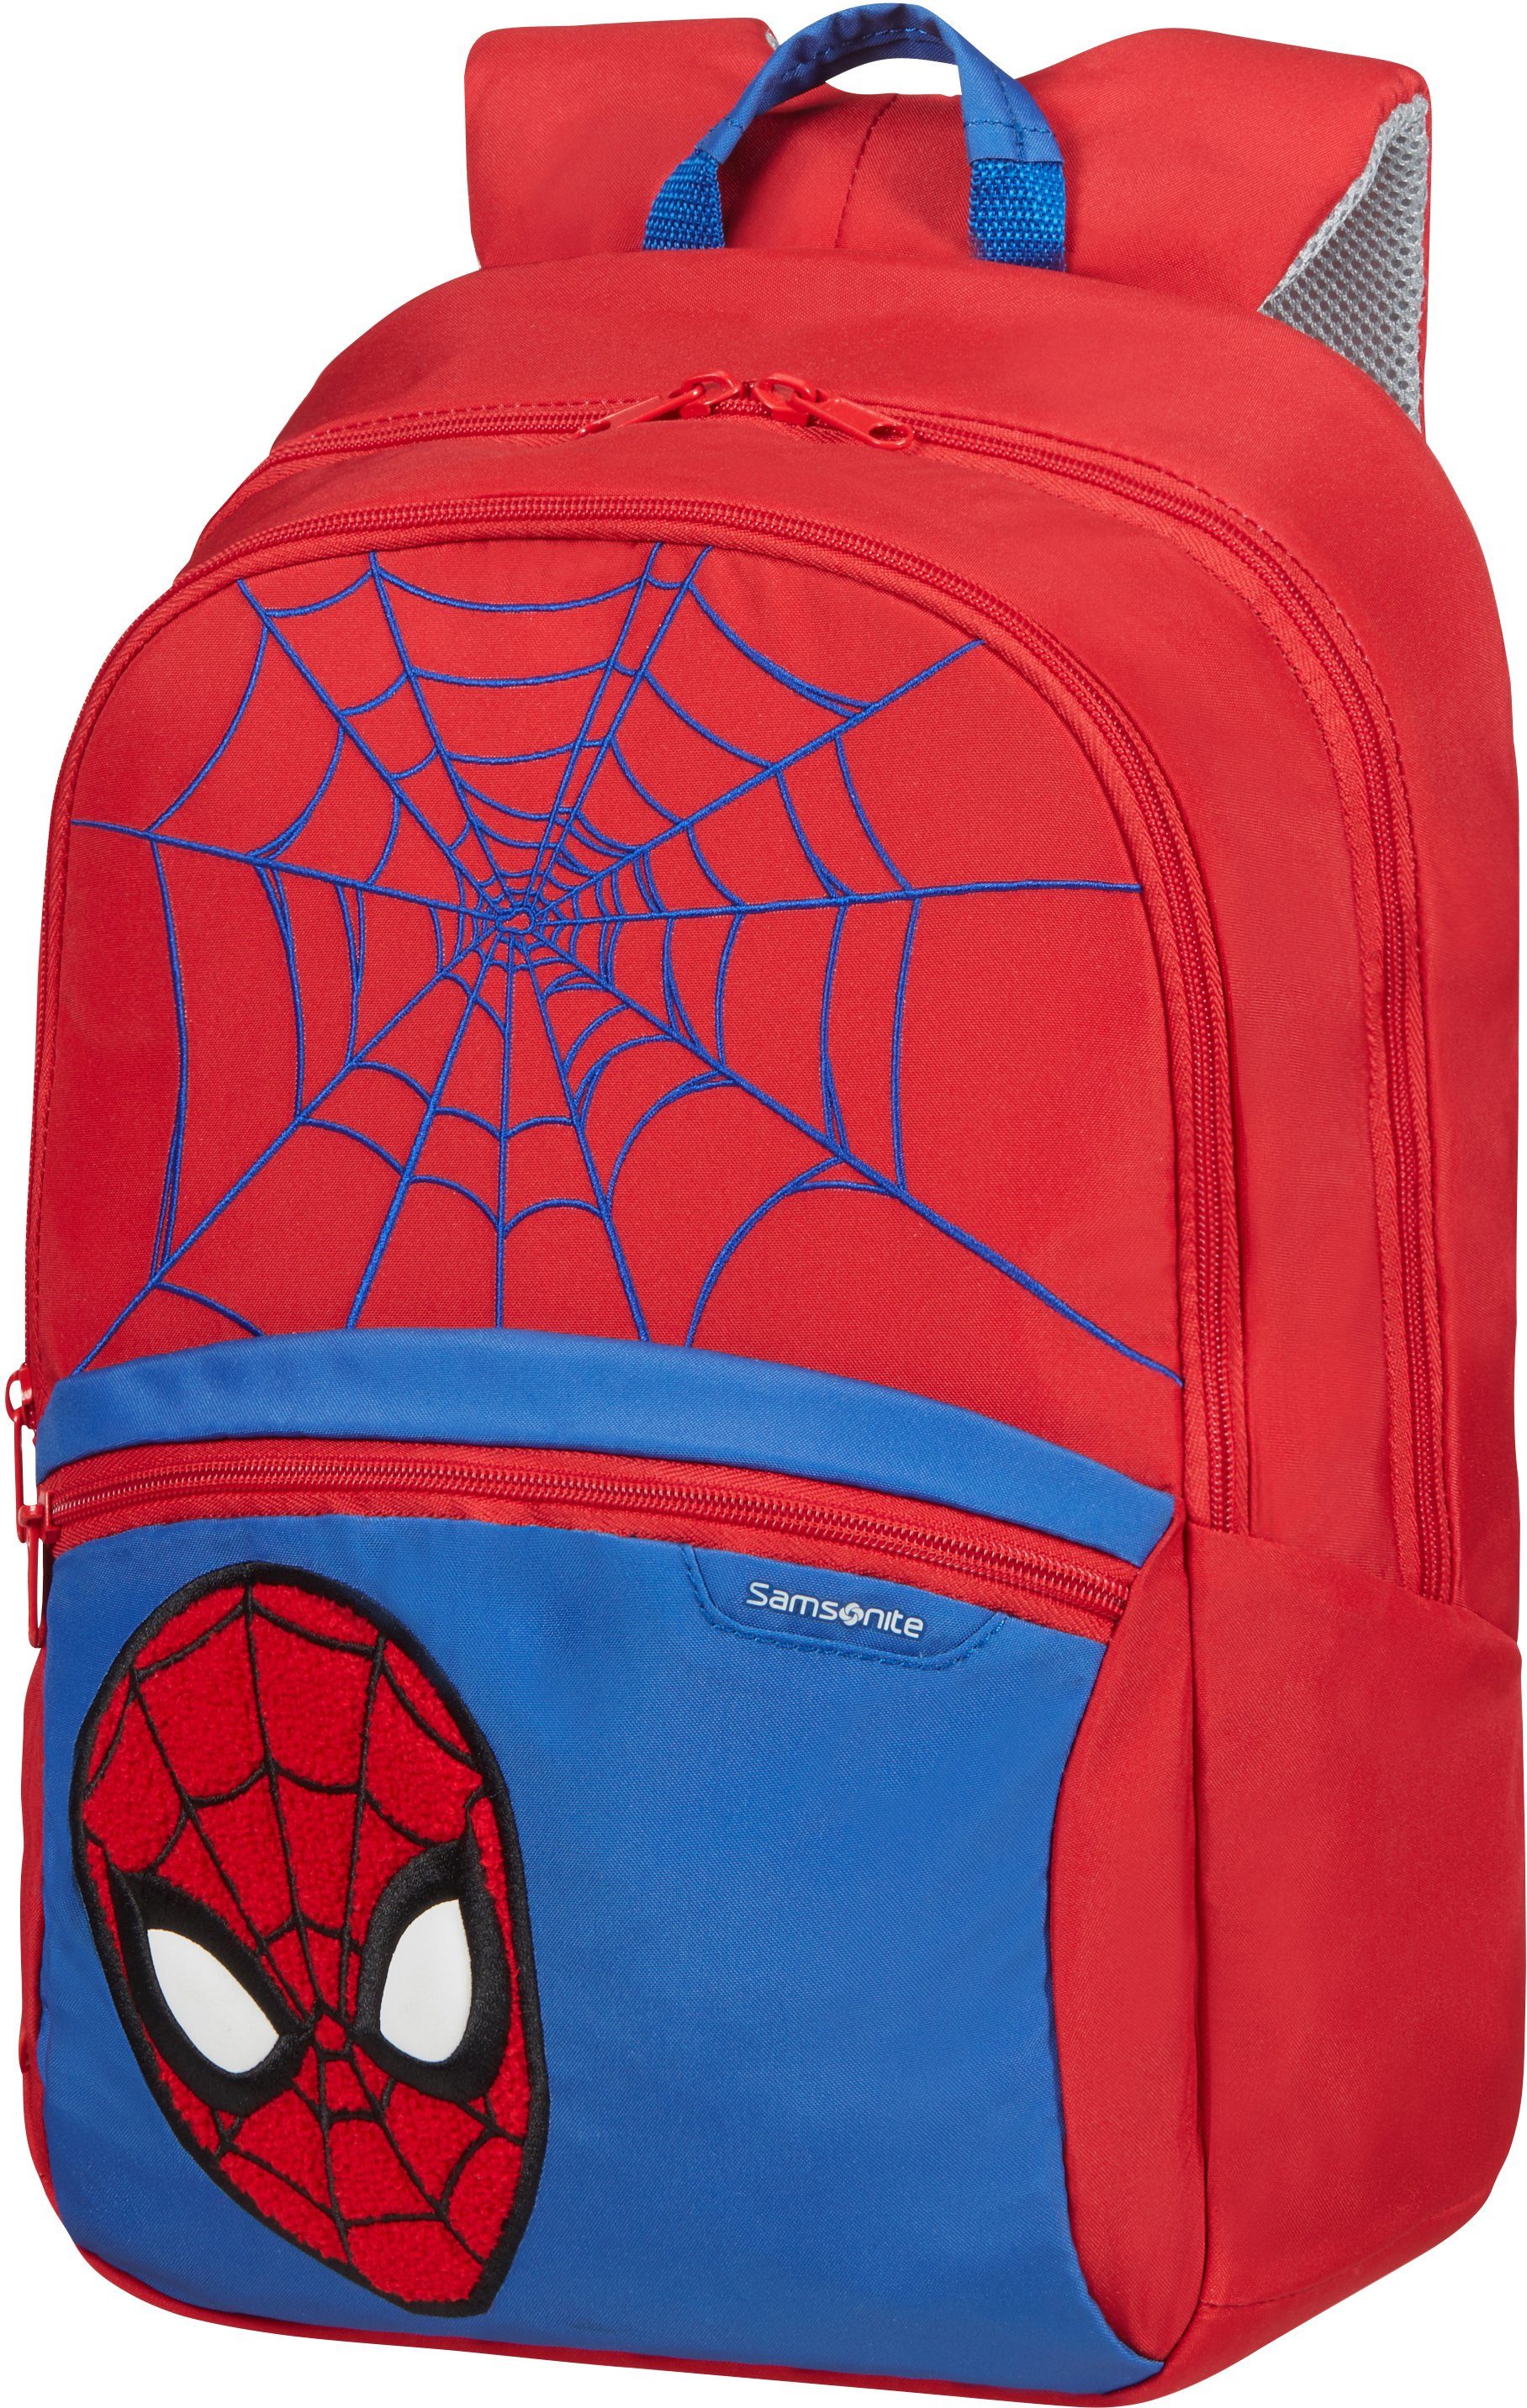 Kinderrucksack Samsonite M, Disney Spiderman 2.0, Ultimate